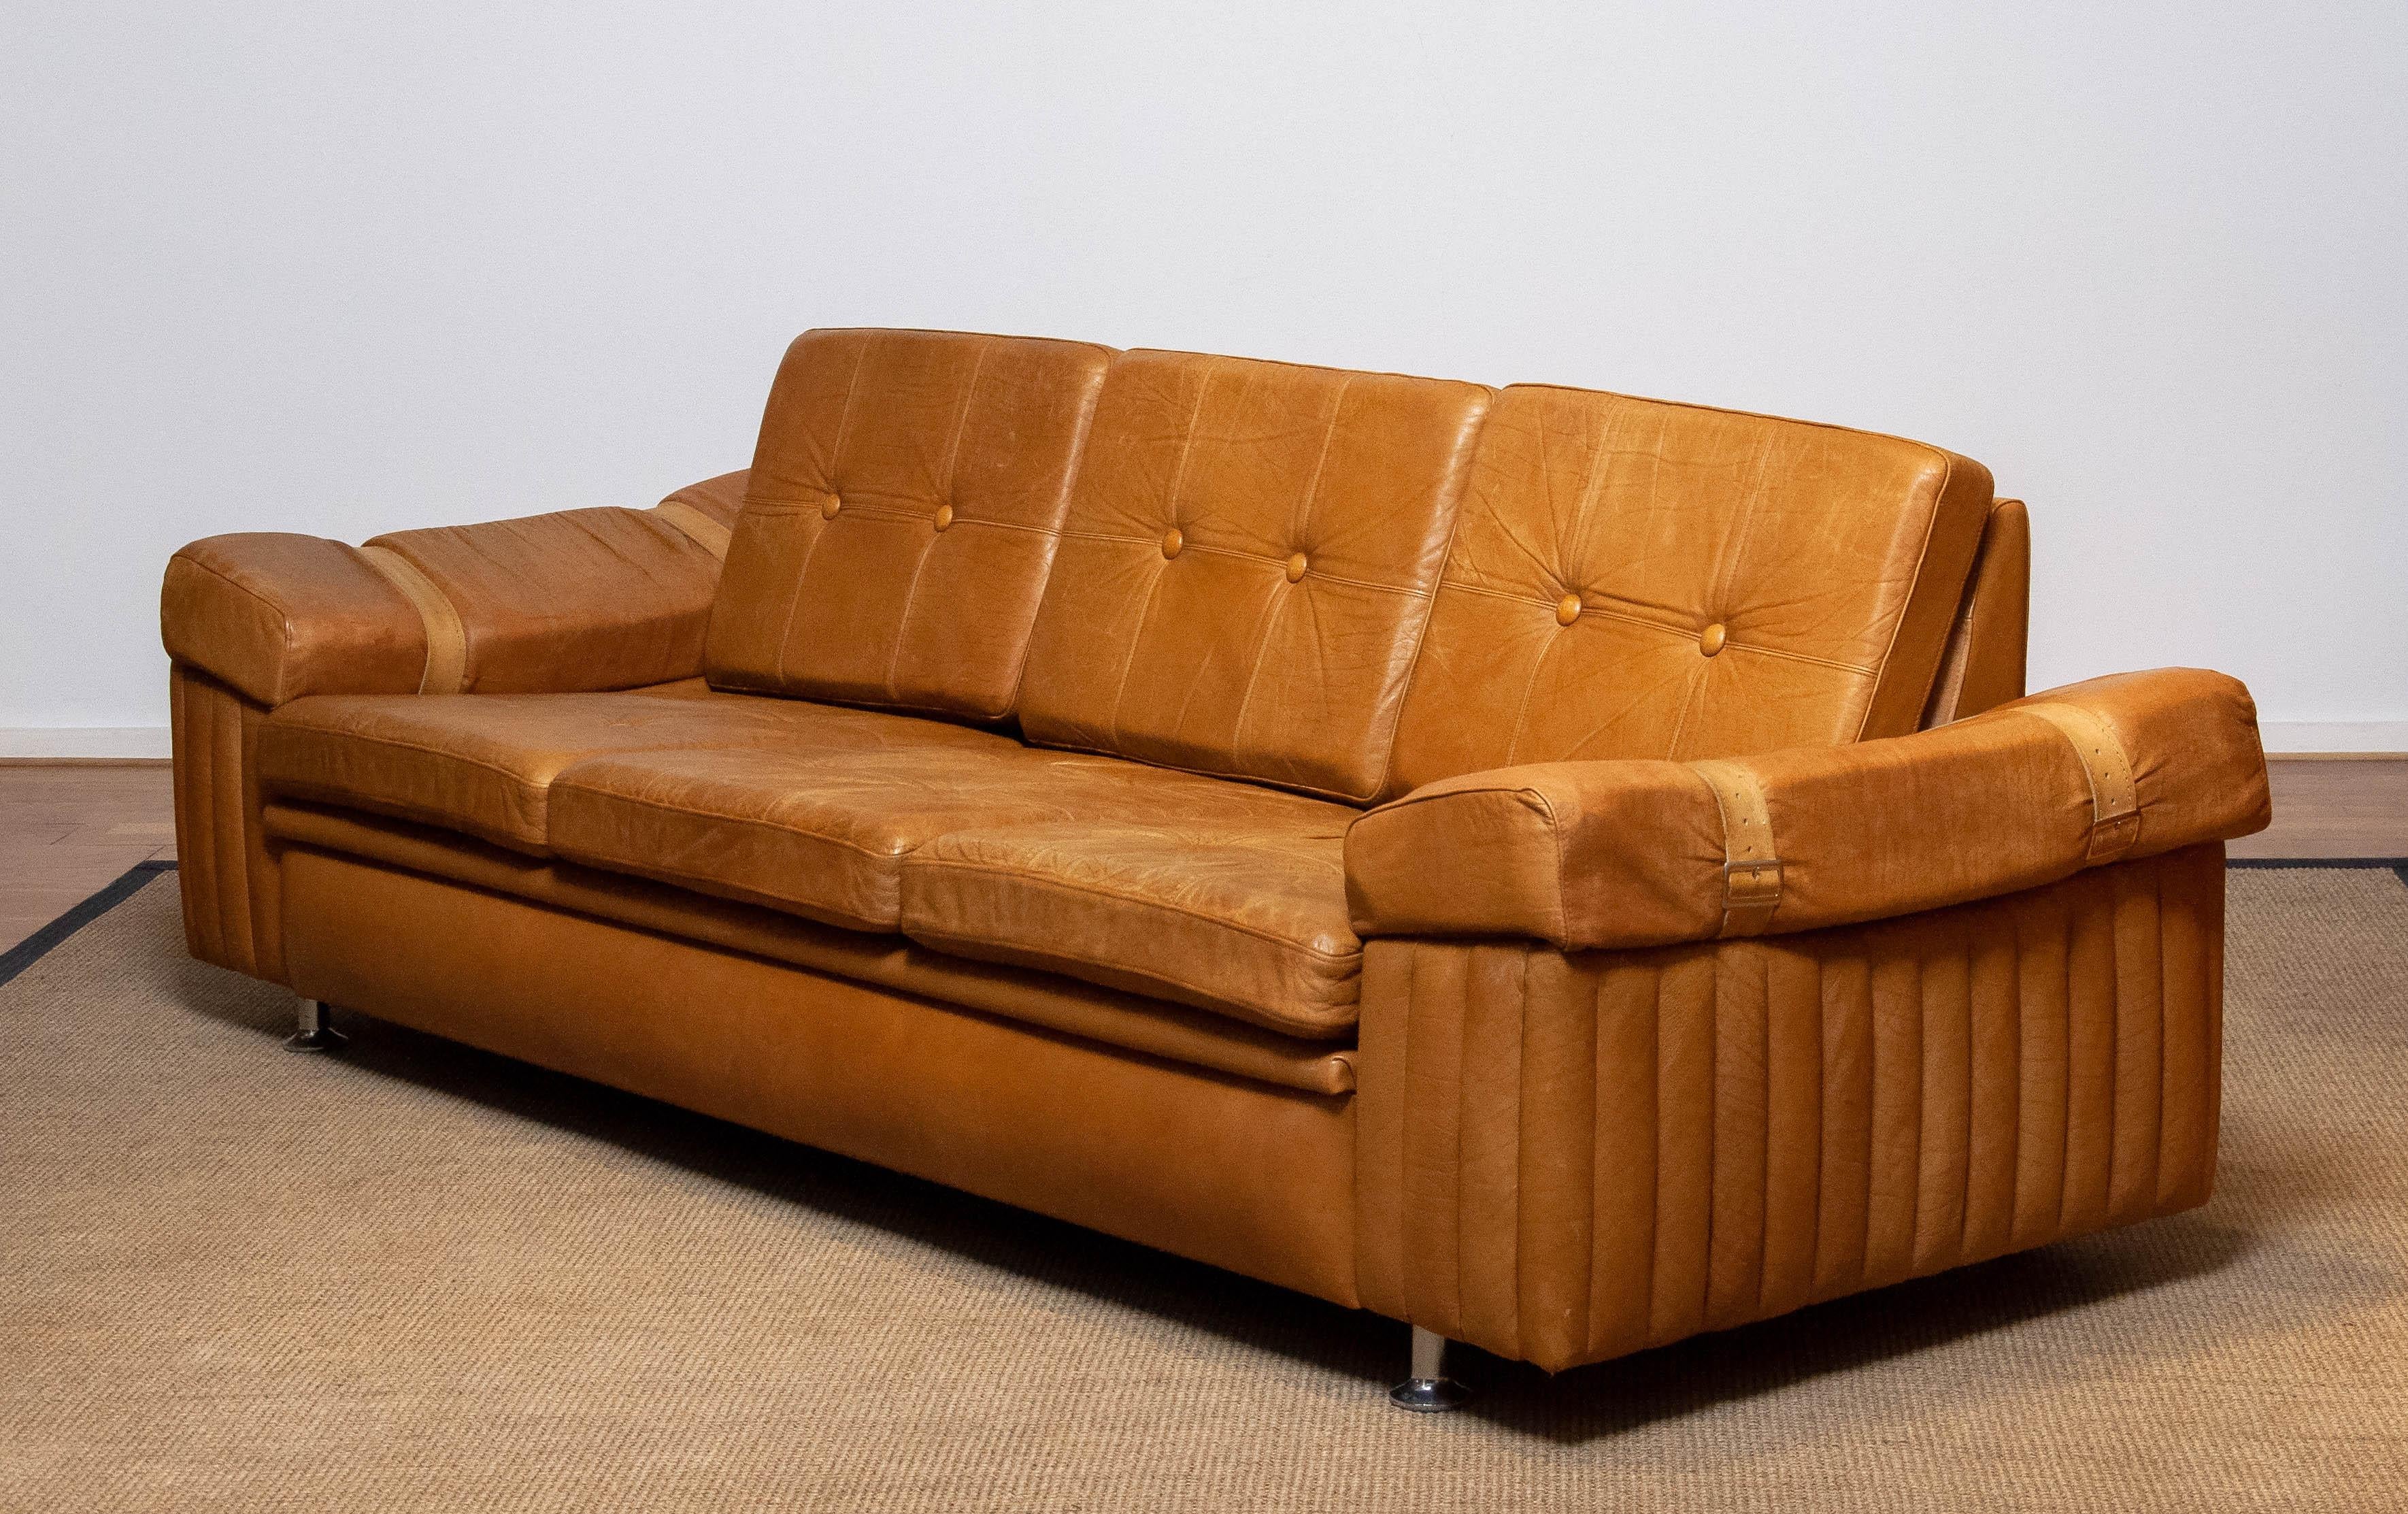 Schönes brutalistisches Dreisitzersofa aus kamelfarbenem Leder. Dieses skandinavische Sofa erweckt aufgrund der verwendeten Materialien, des Designs und der Qualität den Eindruck, dass es ein schwedisches Produkt der Firma Norell AB ist, aber wir